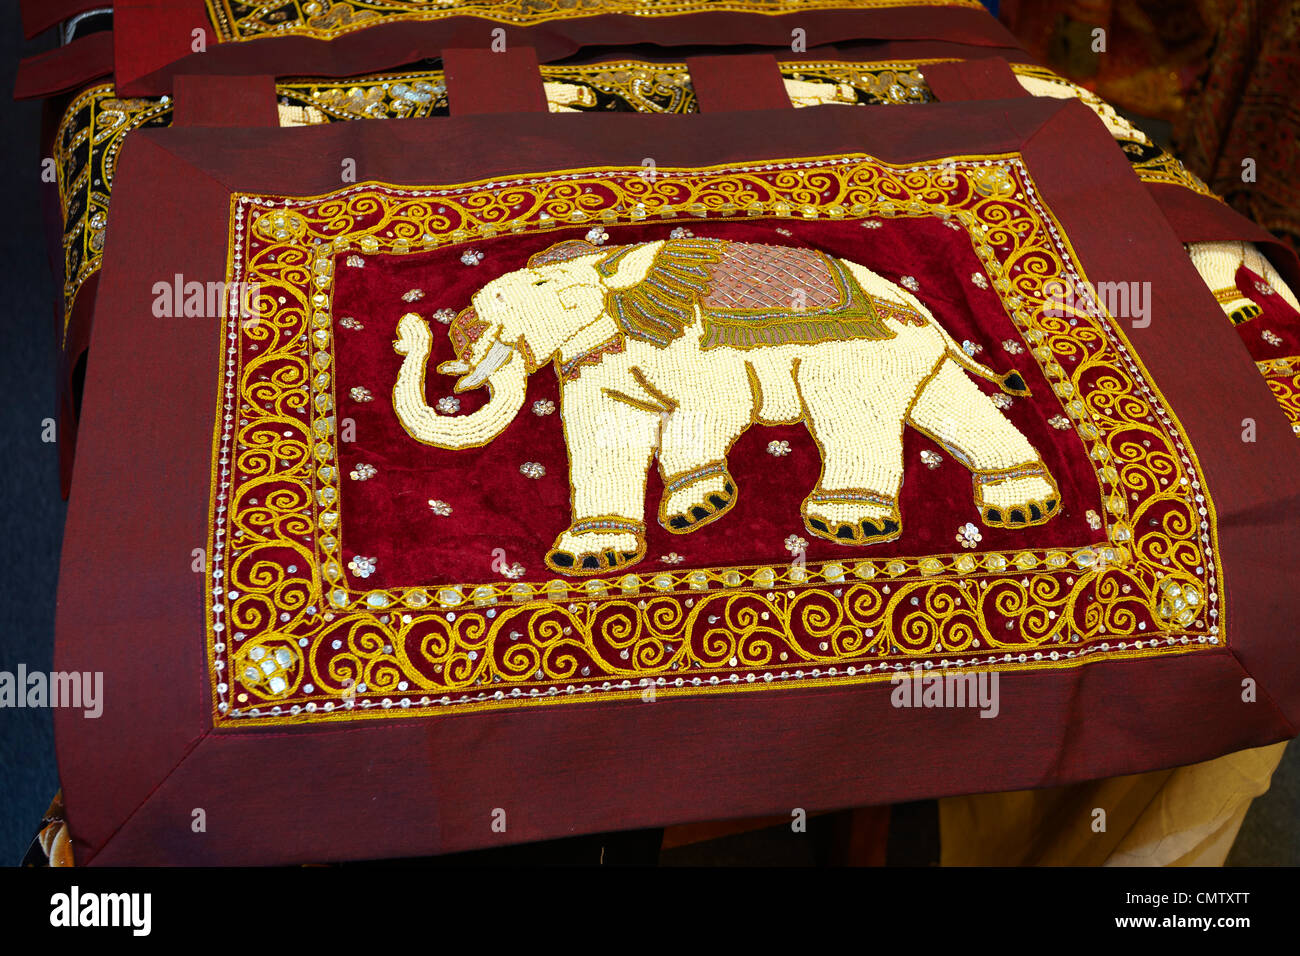 Sri Lanka - Kandy, tienda con materiales decorativos, art deco, arte popular recuerdos de Sri Lanka Foto de stock